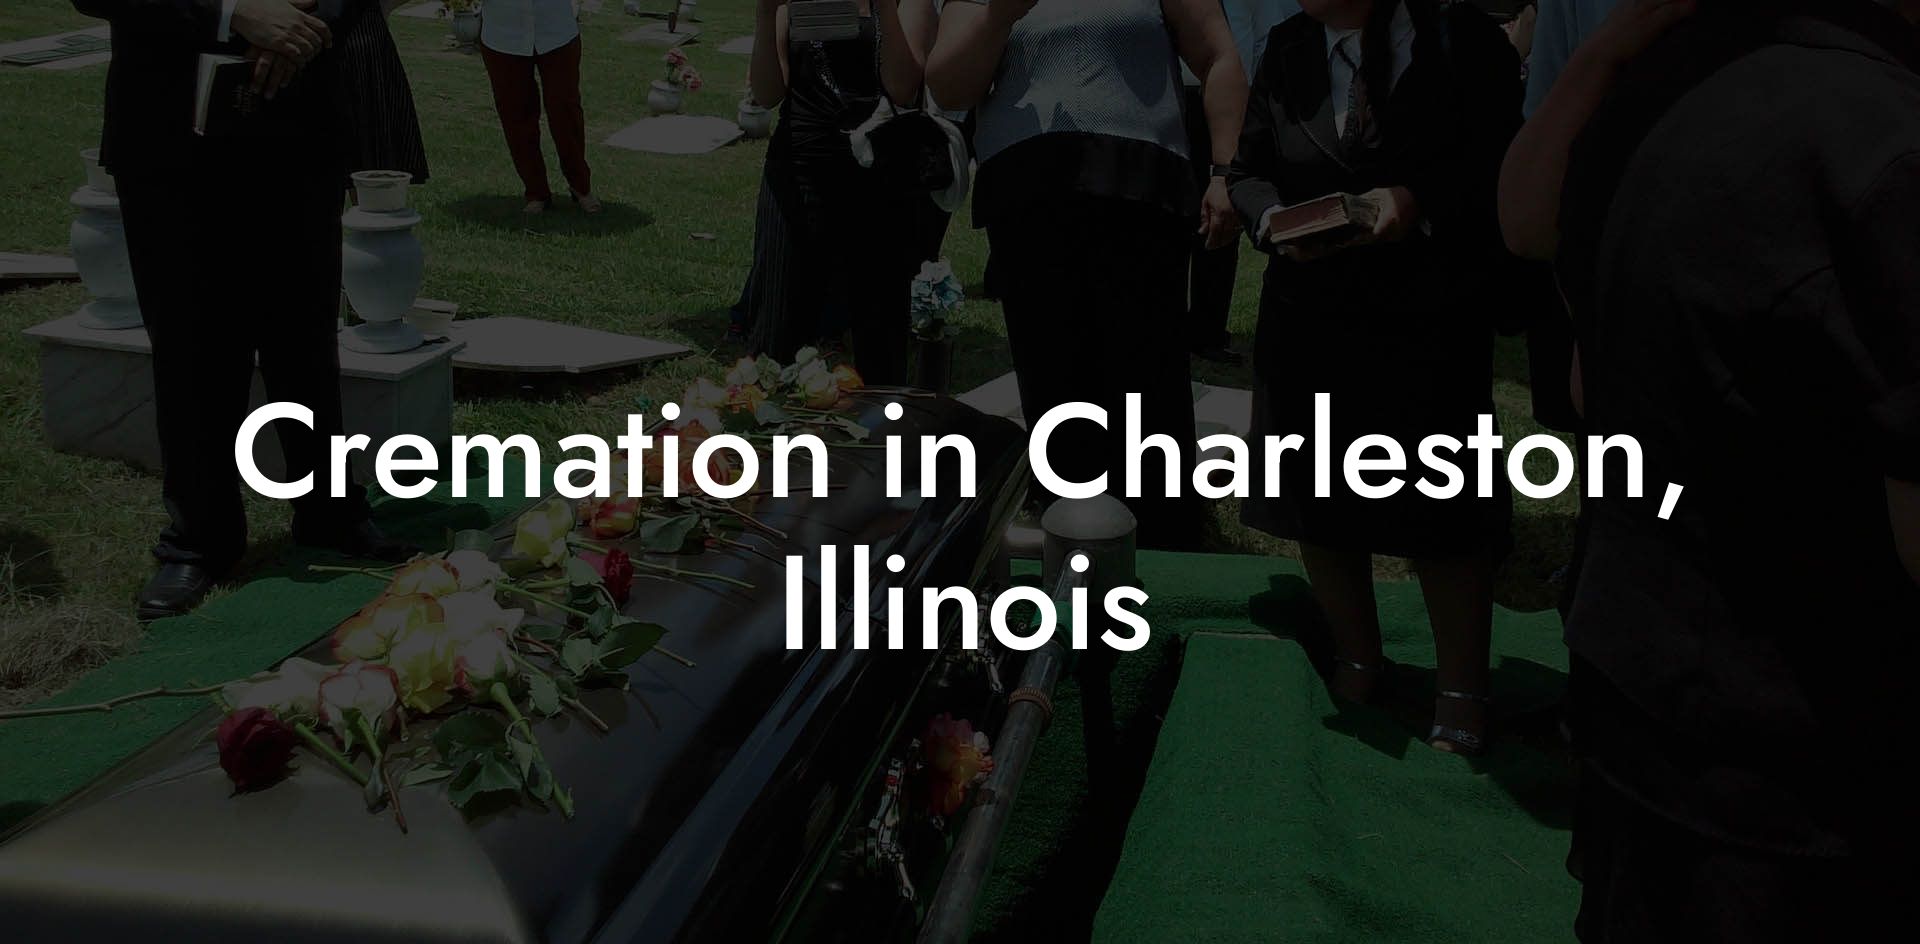 Cremation in Charleston, Illinois